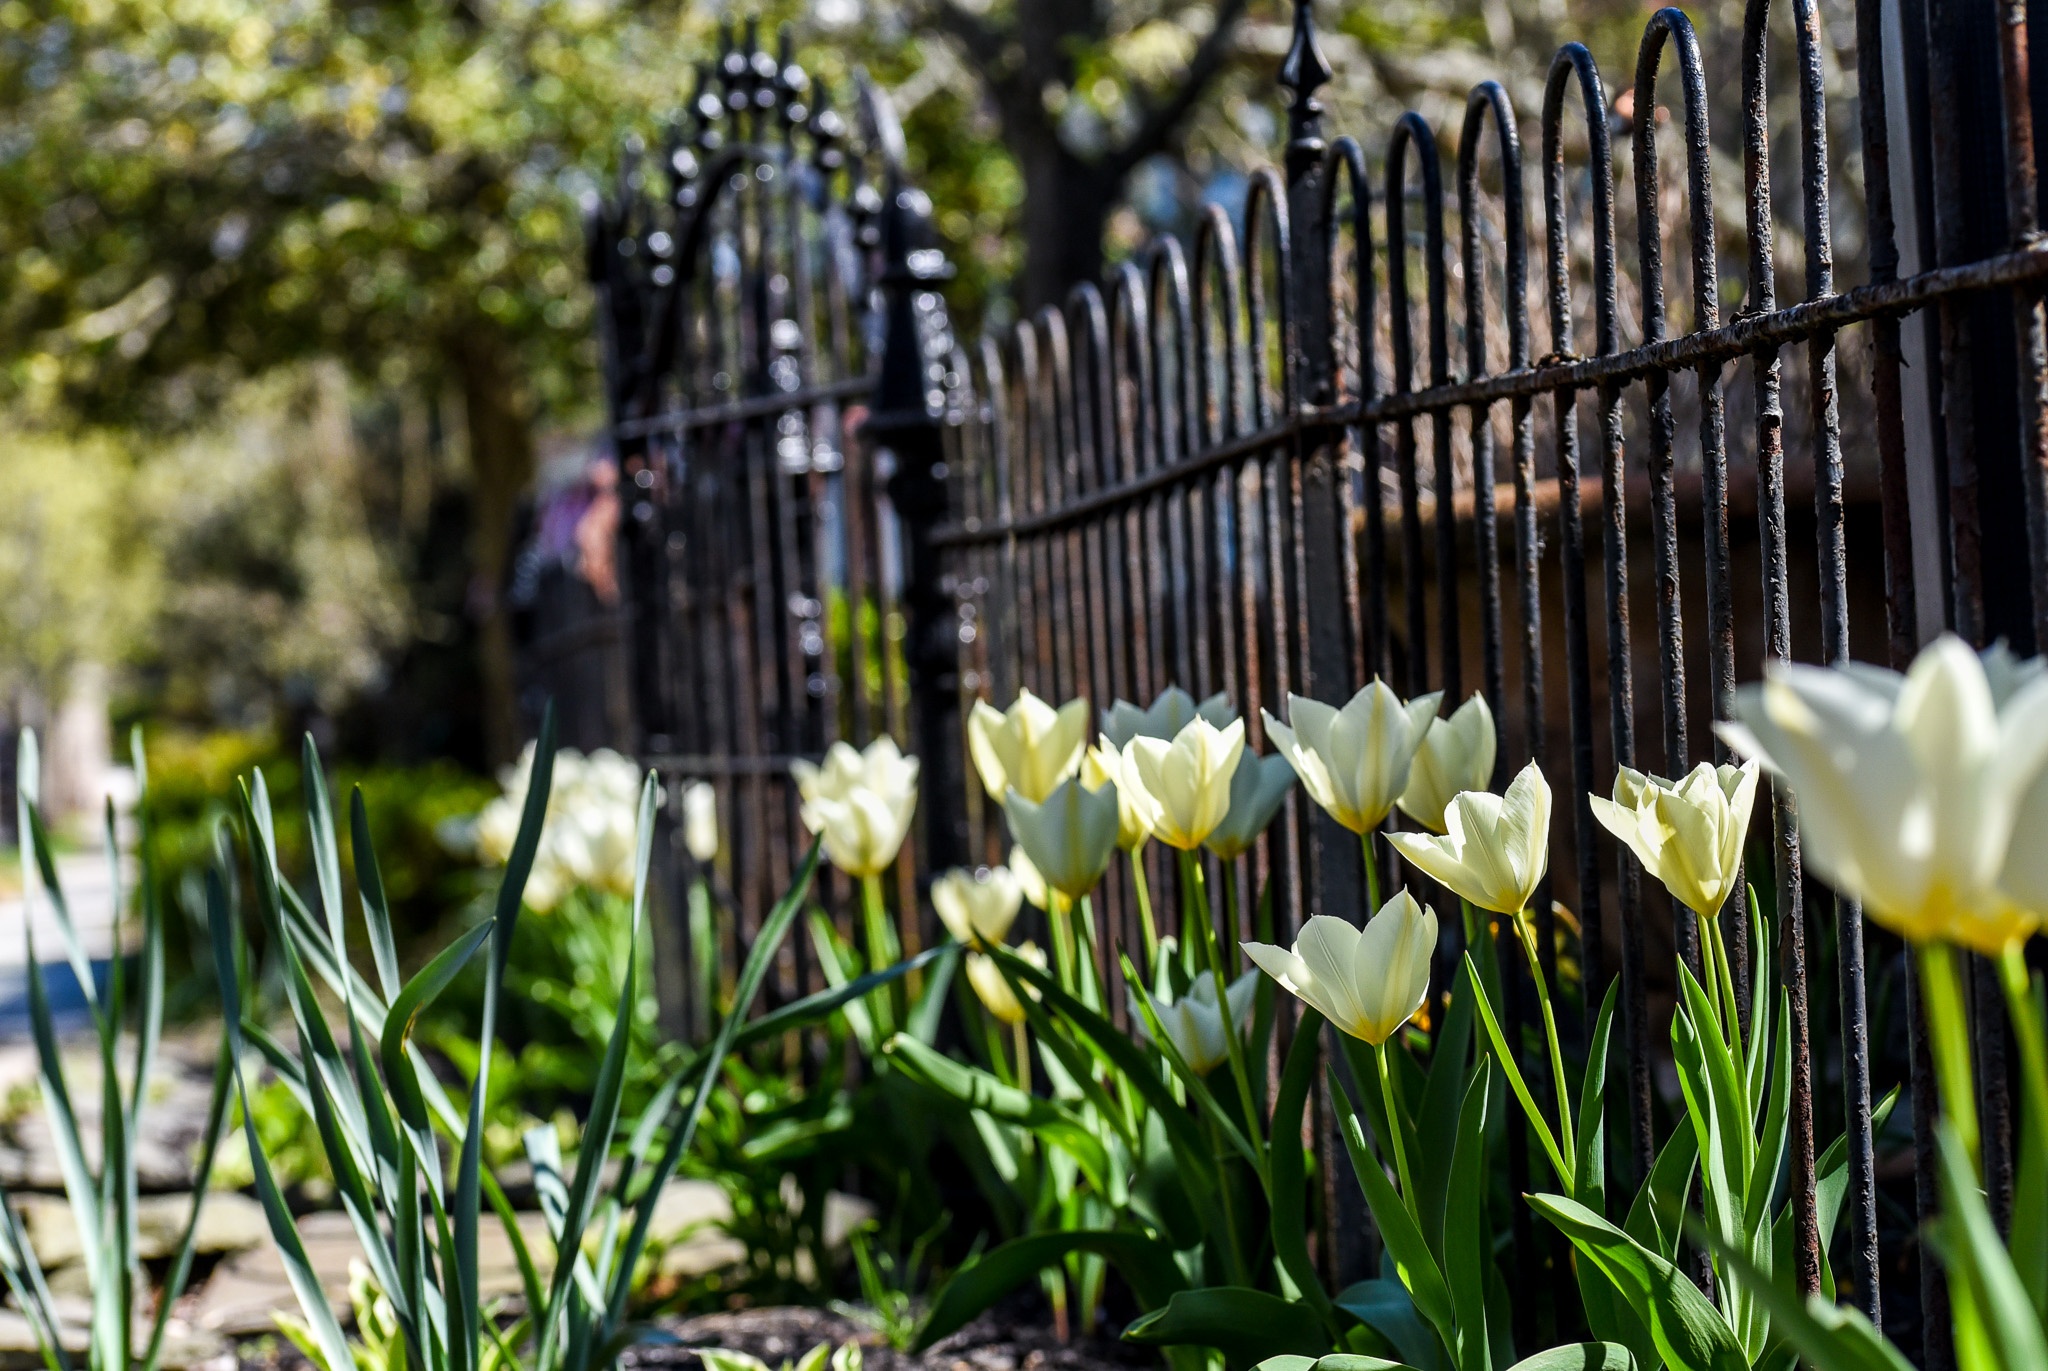 Tulips on Washington Street near Washington Inn.